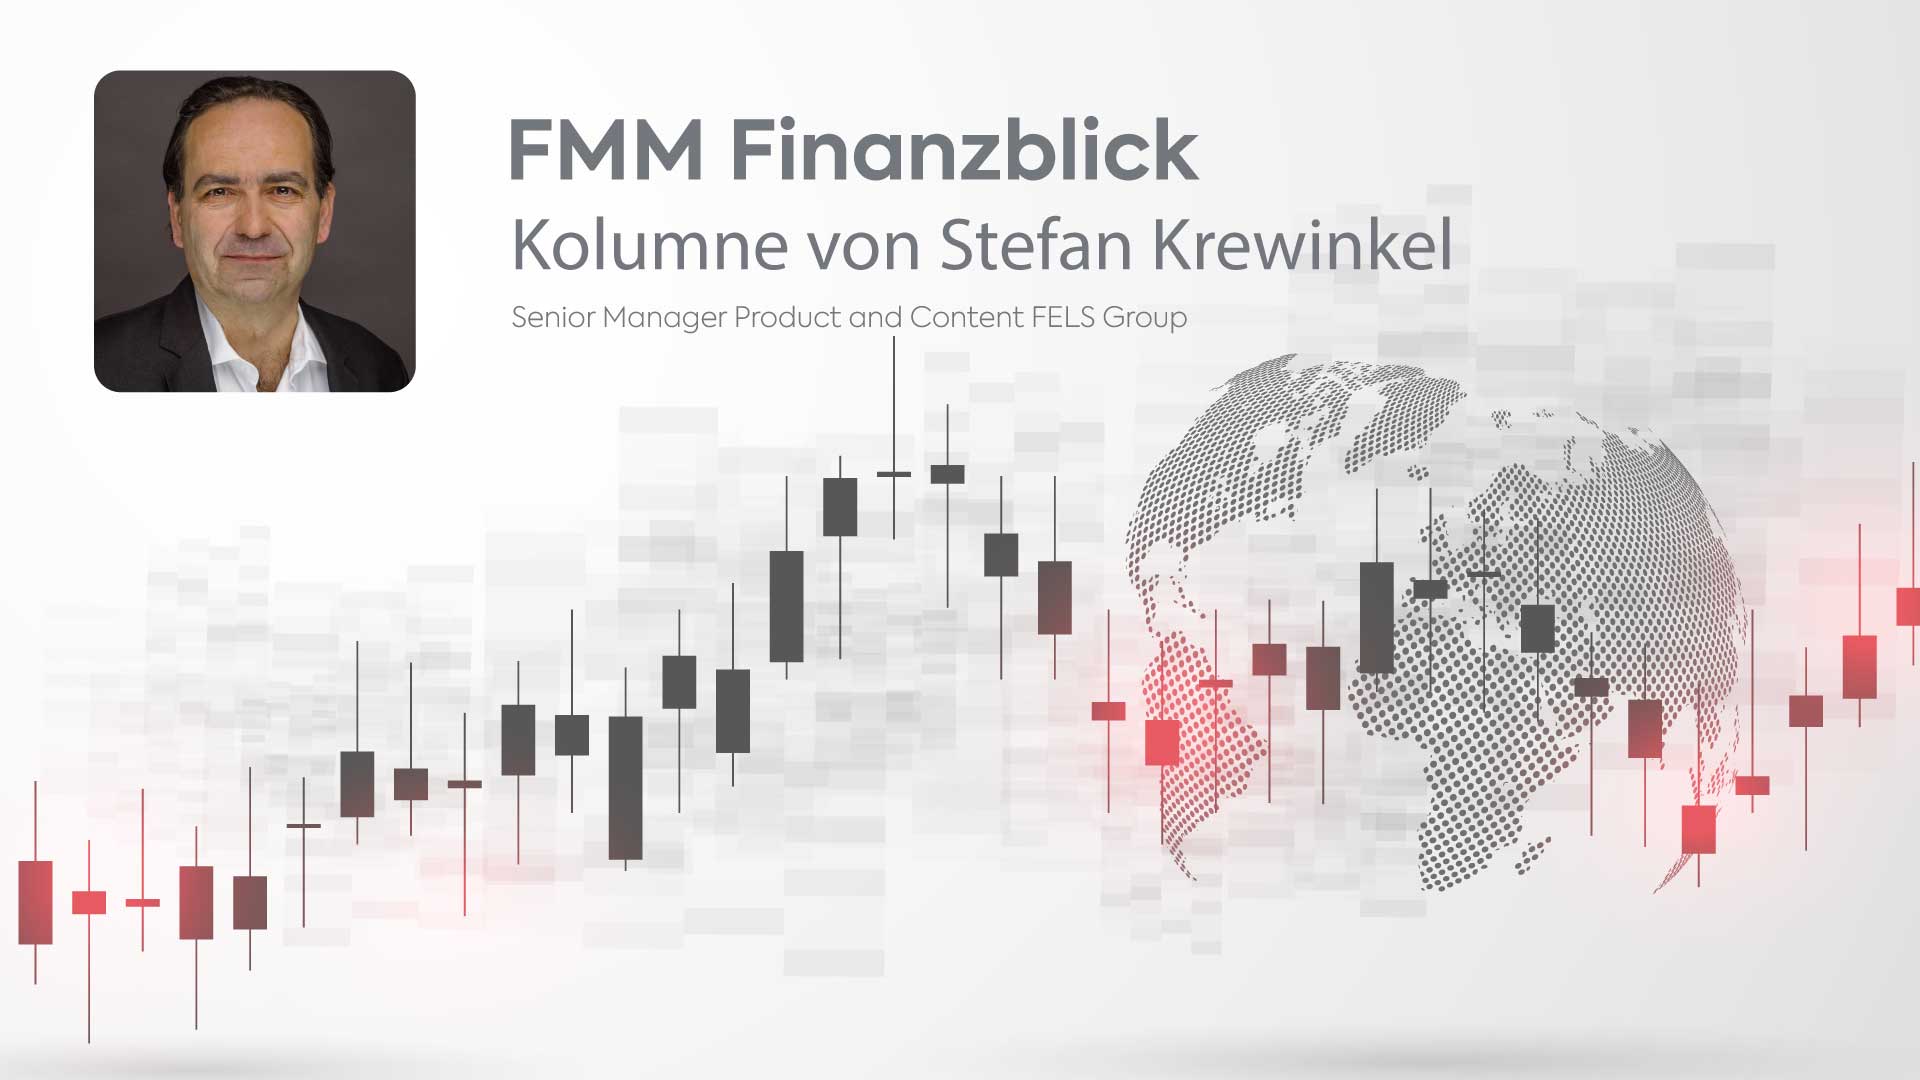 FMM Finanzblick eine Kolumne von Stefan Krewinkel